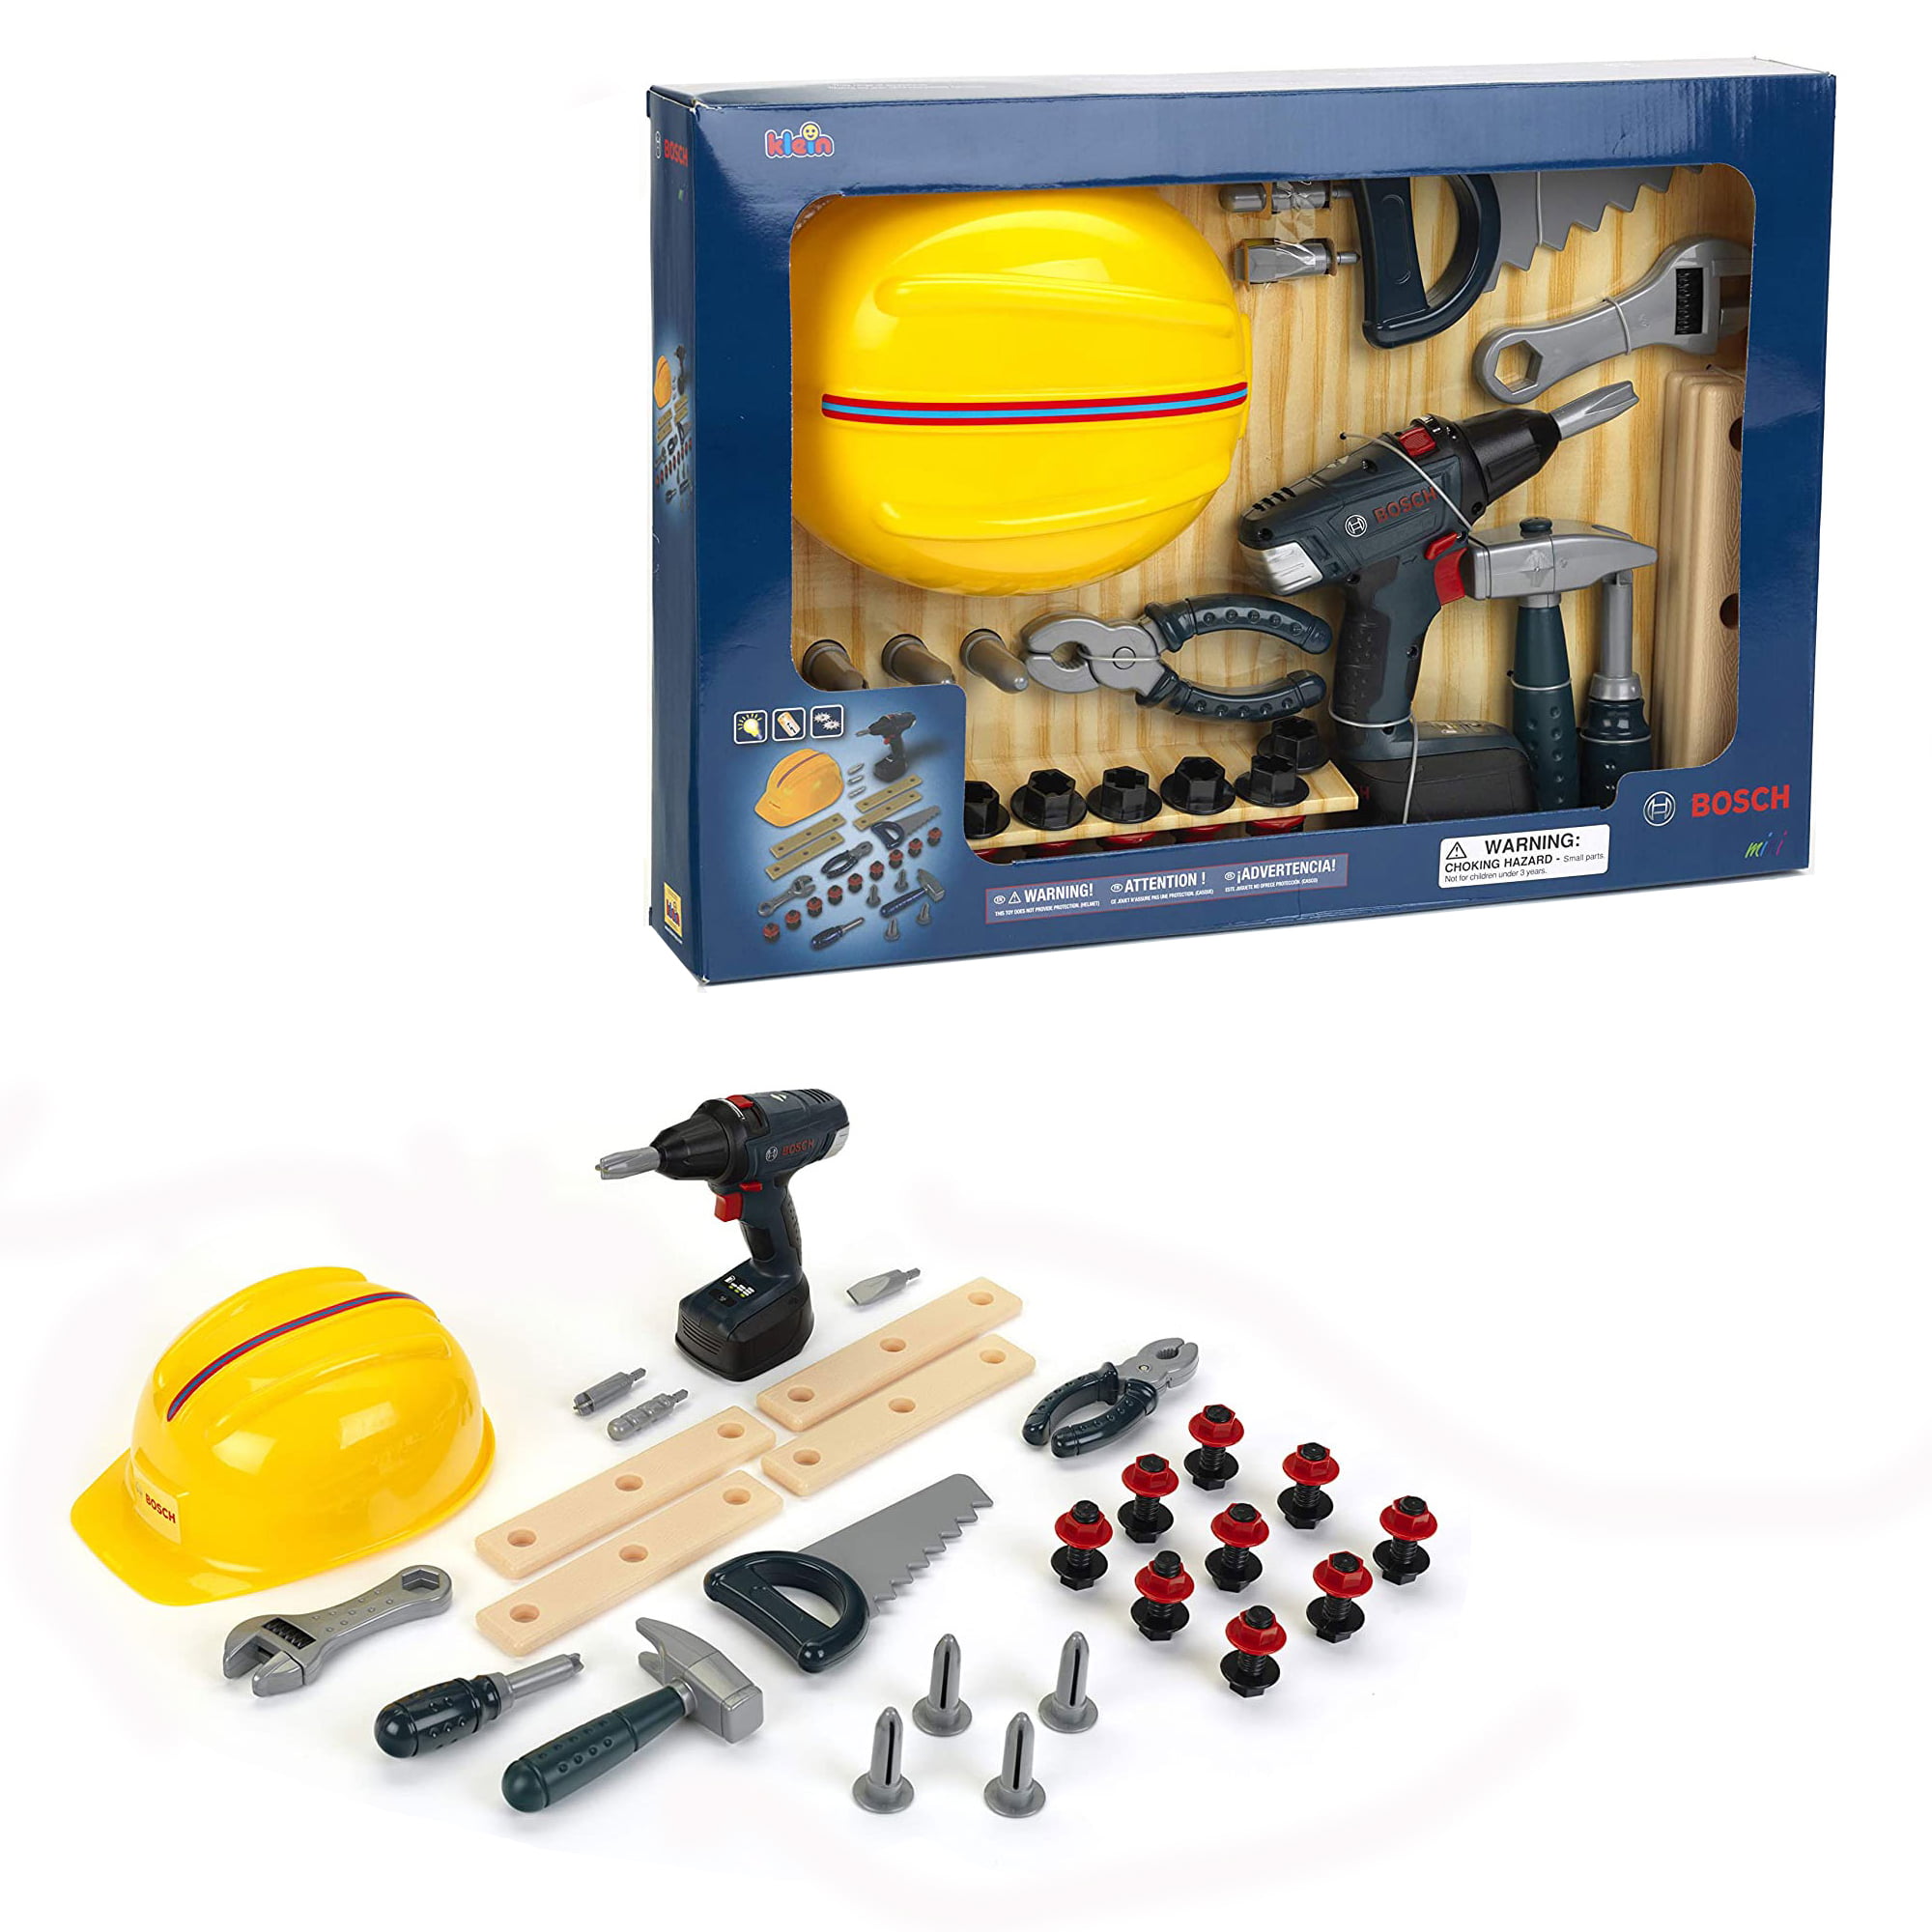 Ritmisch Diversen Ezel Theo Klein Bosch DIY Kid Toy Construction Toolset Bundle with Safety  Accessories - Walmart.com